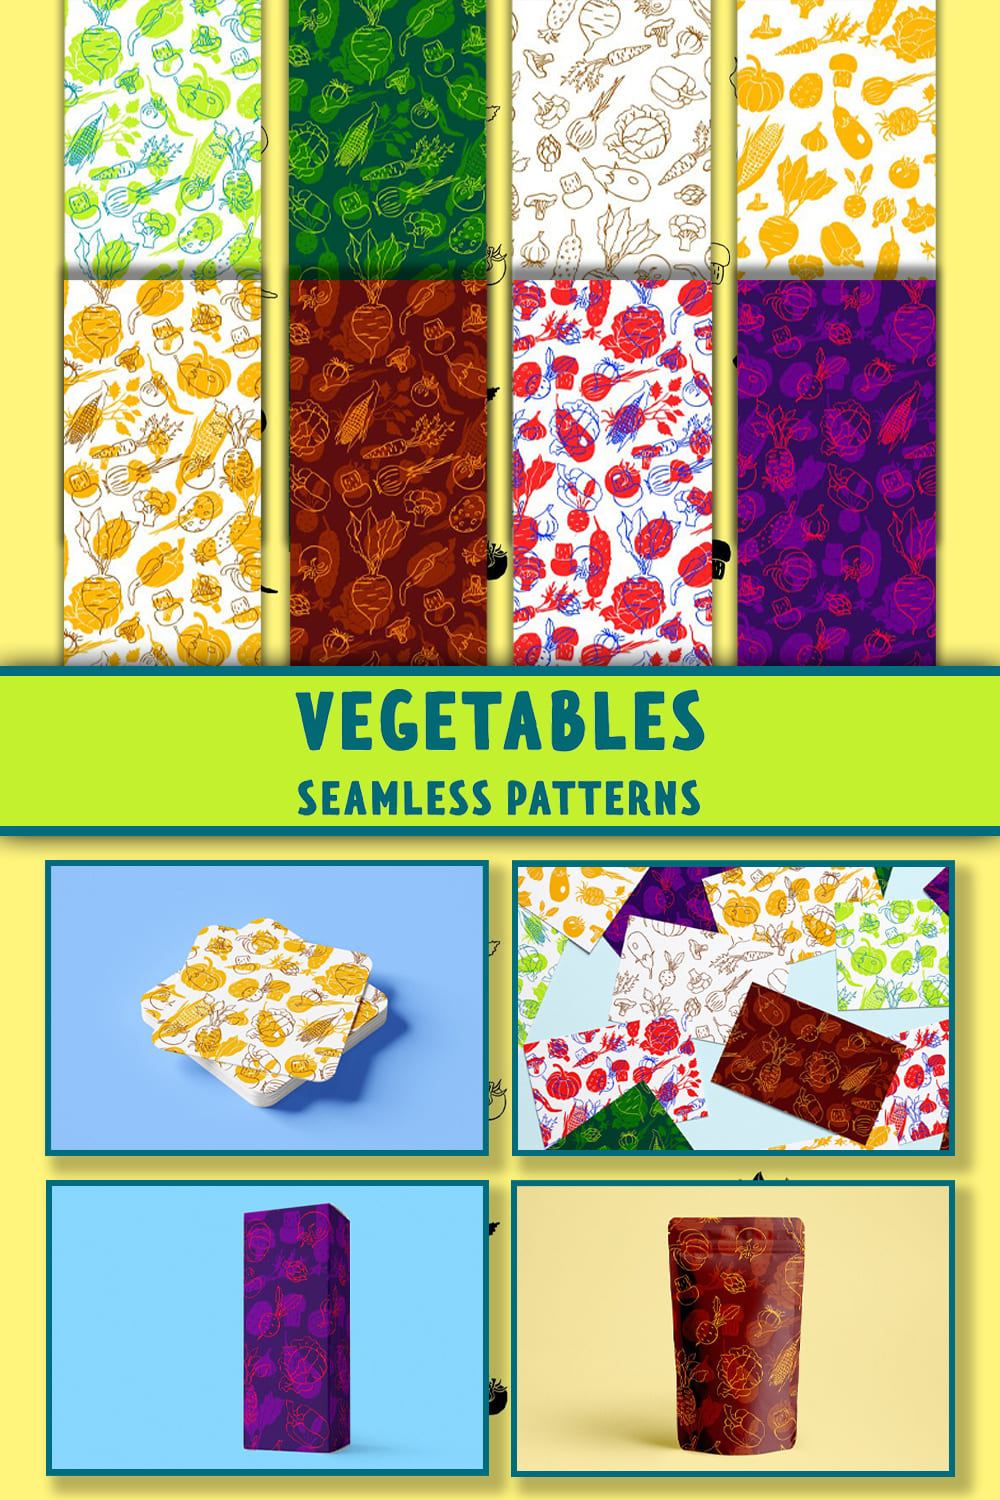 Vegetables Patterns pinterest image.